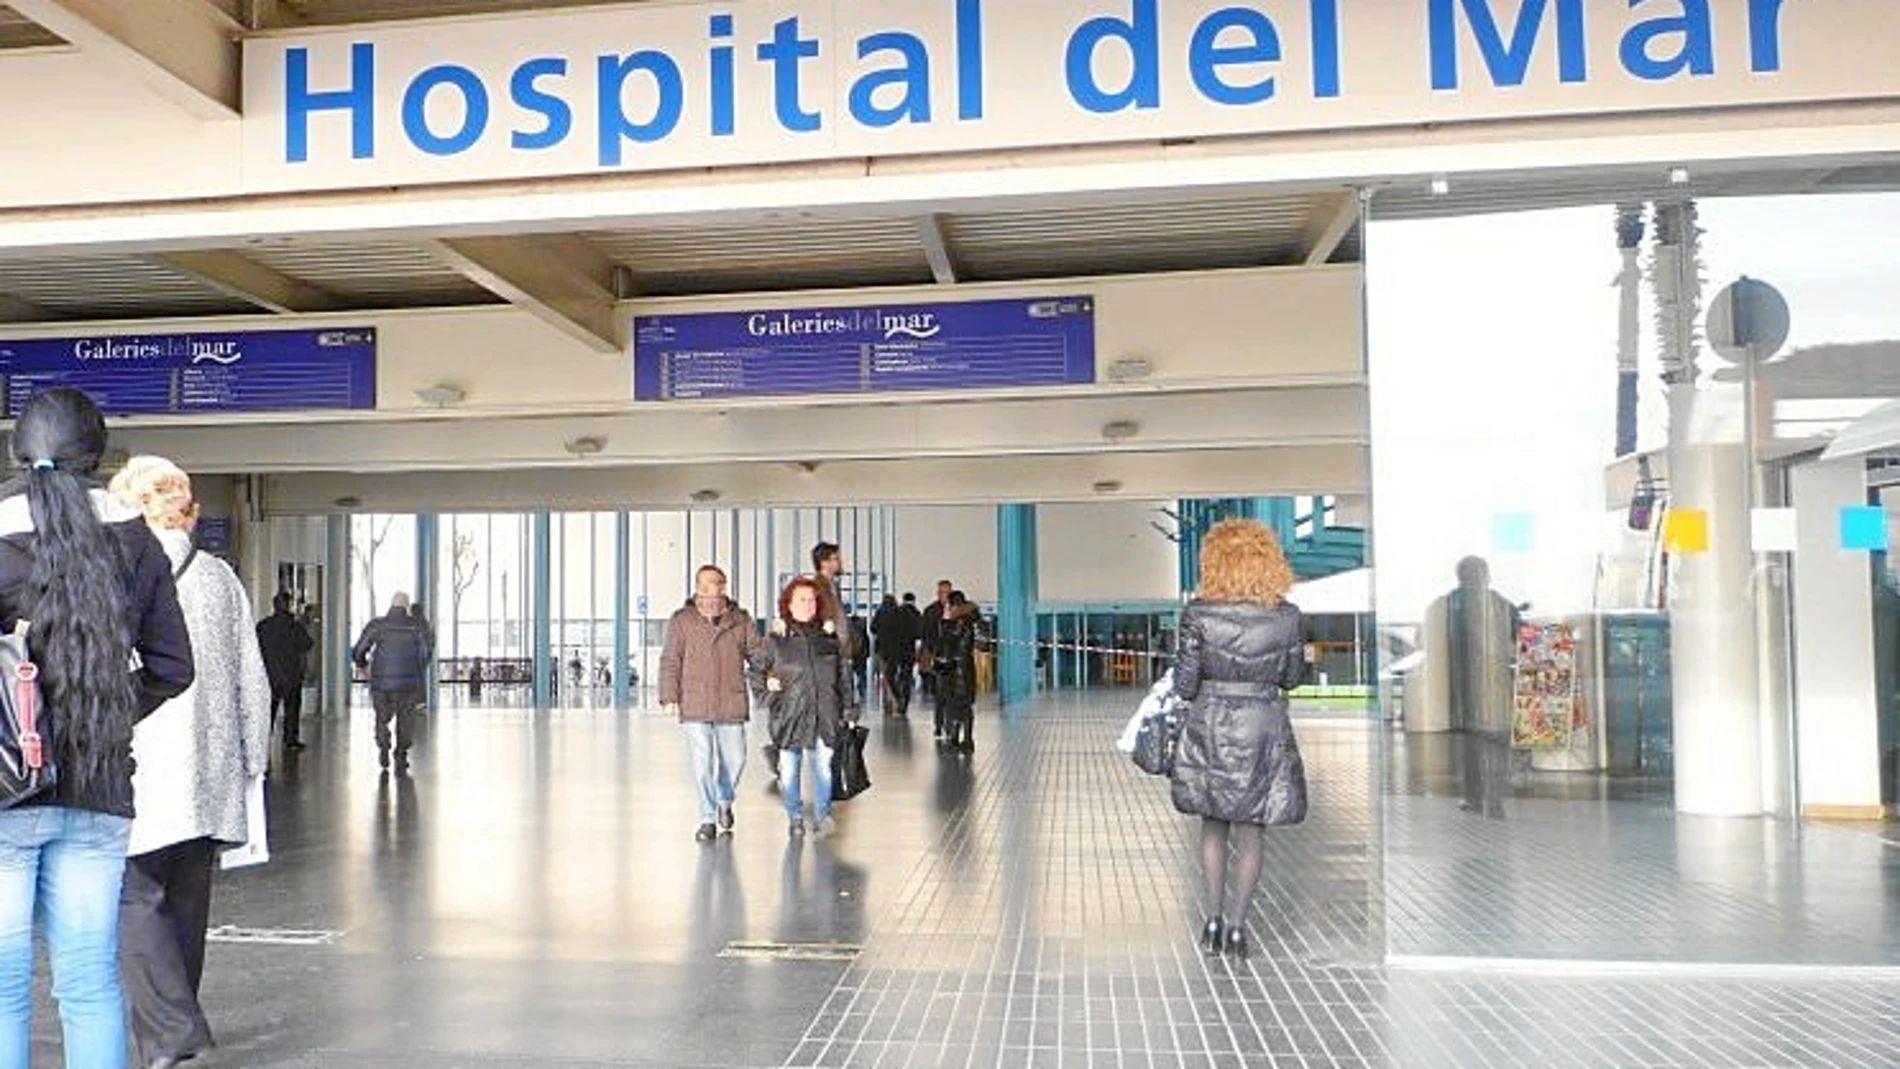 El Hospital del Mar se convierte en el primer centro hospitalario en España que disponga de un banco de células pneuronales para investigar enfermedades mentales